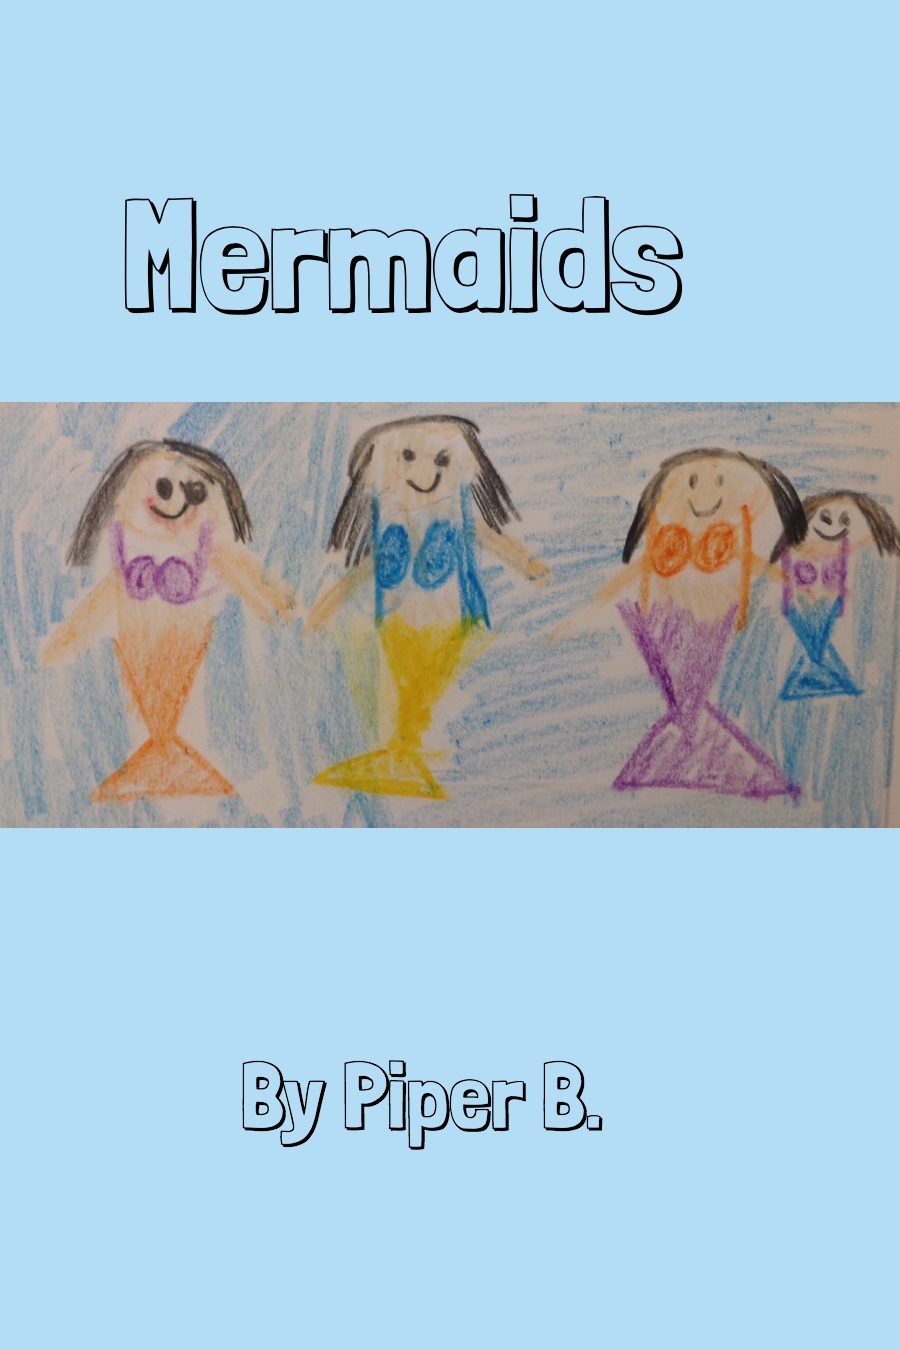 Mermaids by Piper B